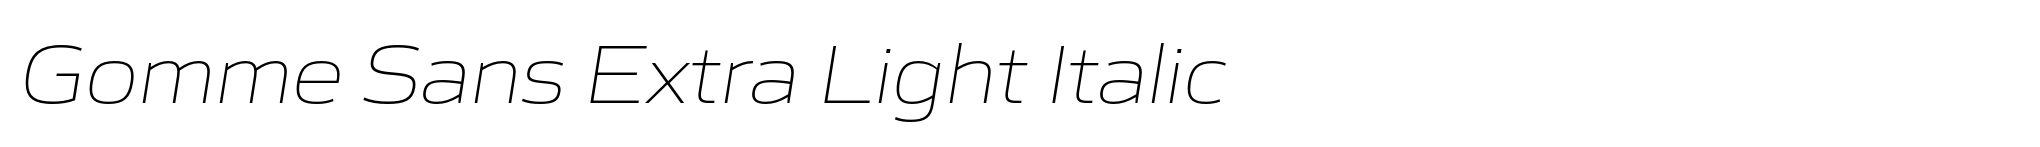 Gomme Sans Extra Light Italic image